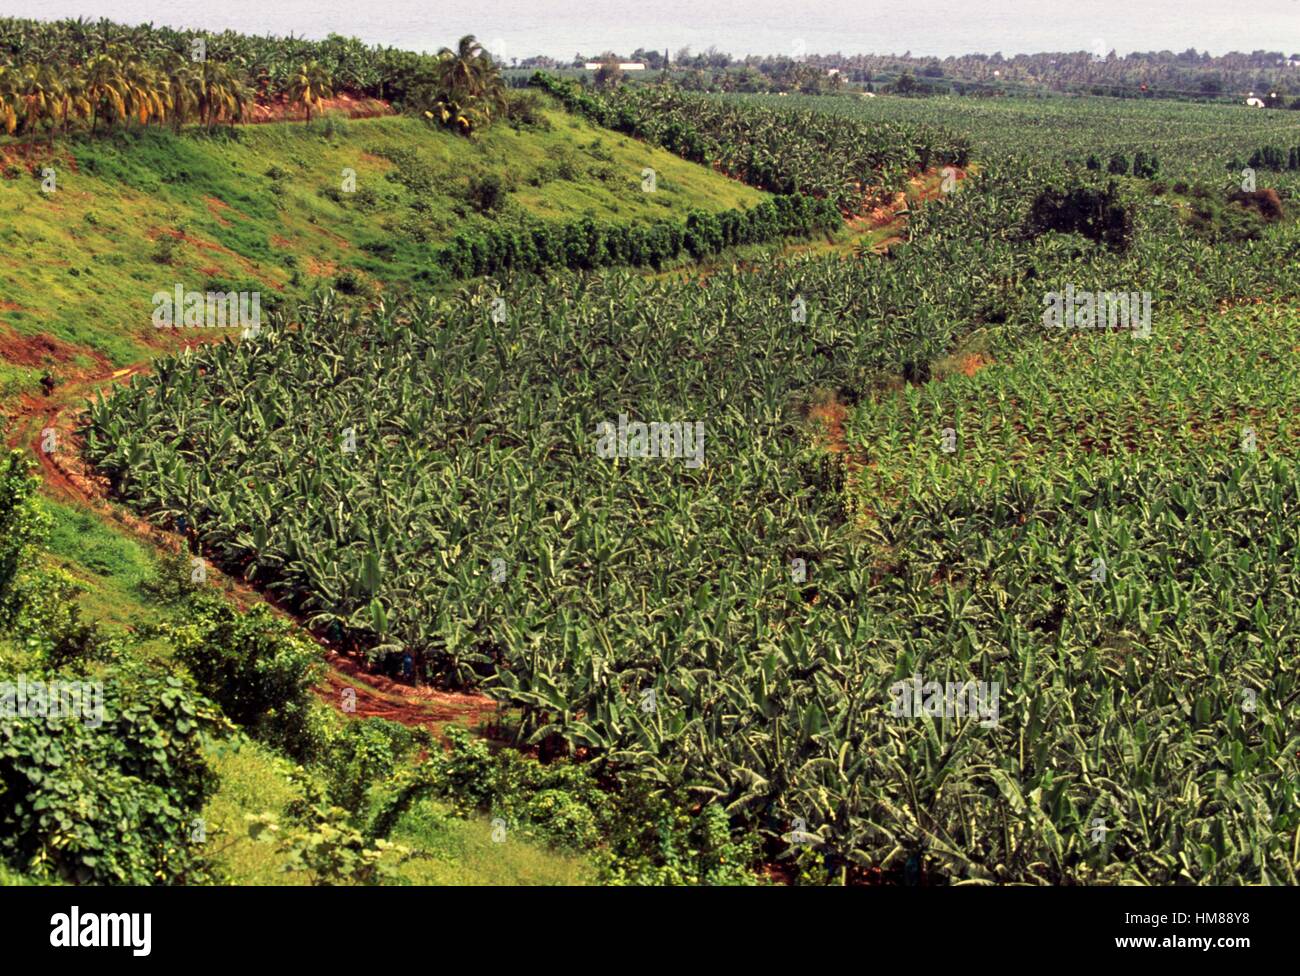 Plantations de bananes dans la région de bananier, Basse-Terre, Guadeloupe, département d'outre-mer de la République française. Banque D'Images